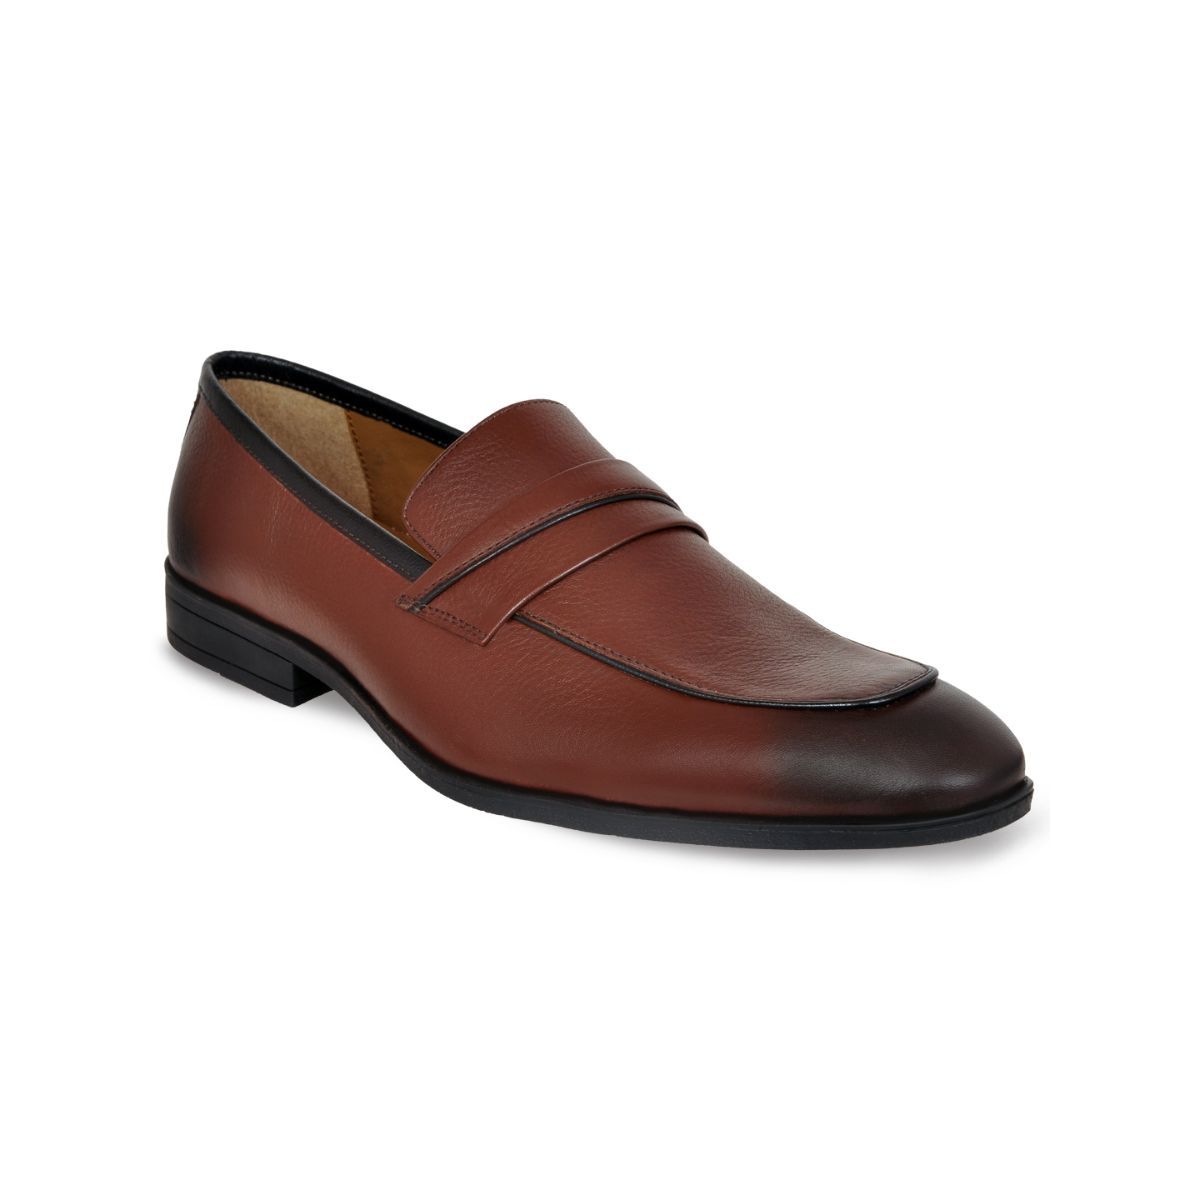 Allen Cooper Brown Formal Loafers Shoes For Men - 7